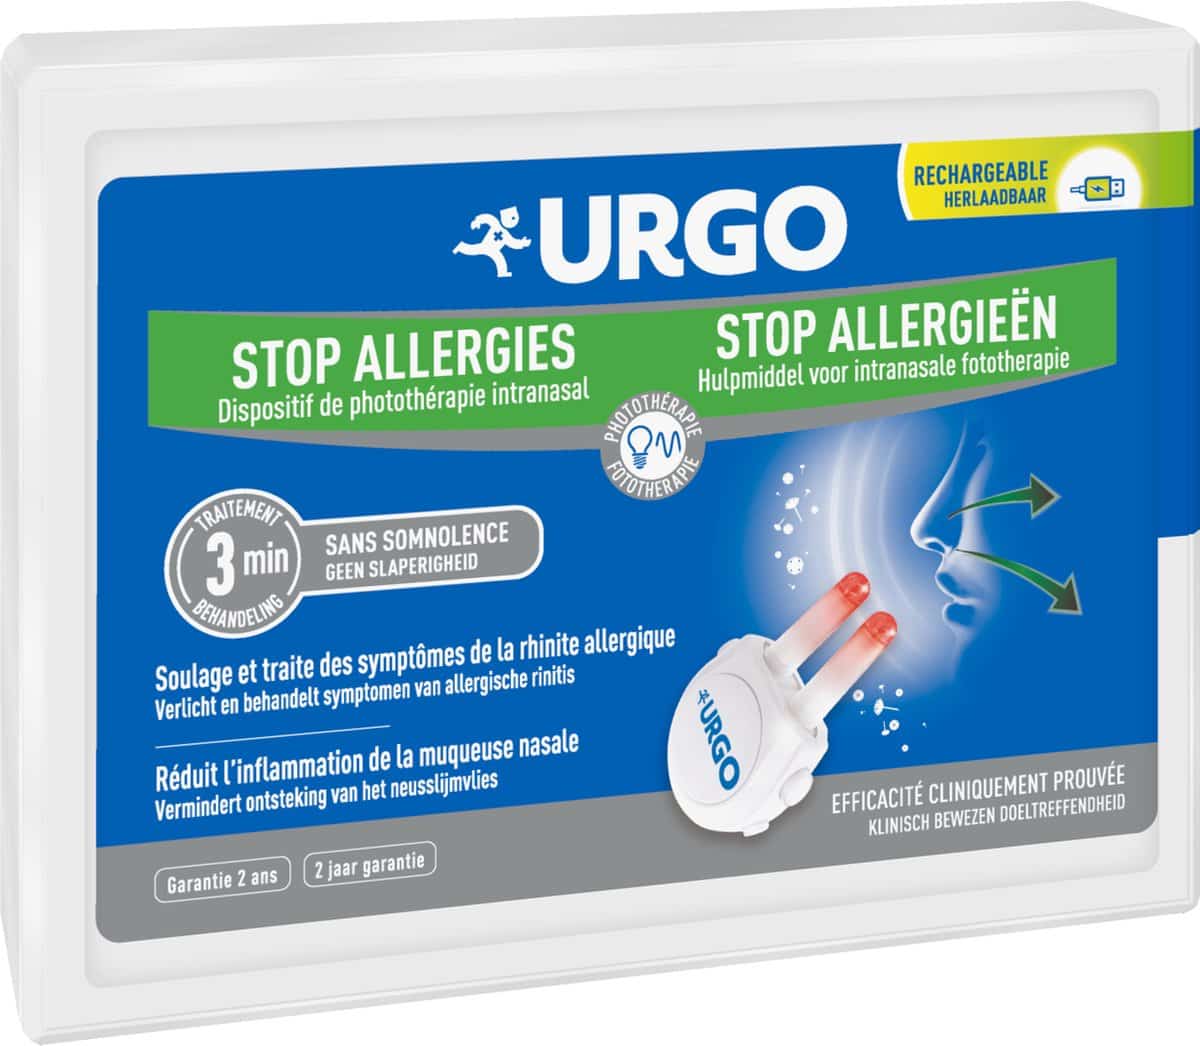 Urgo Stop Allergieën Hulpmiddel Intranasale fototherapie